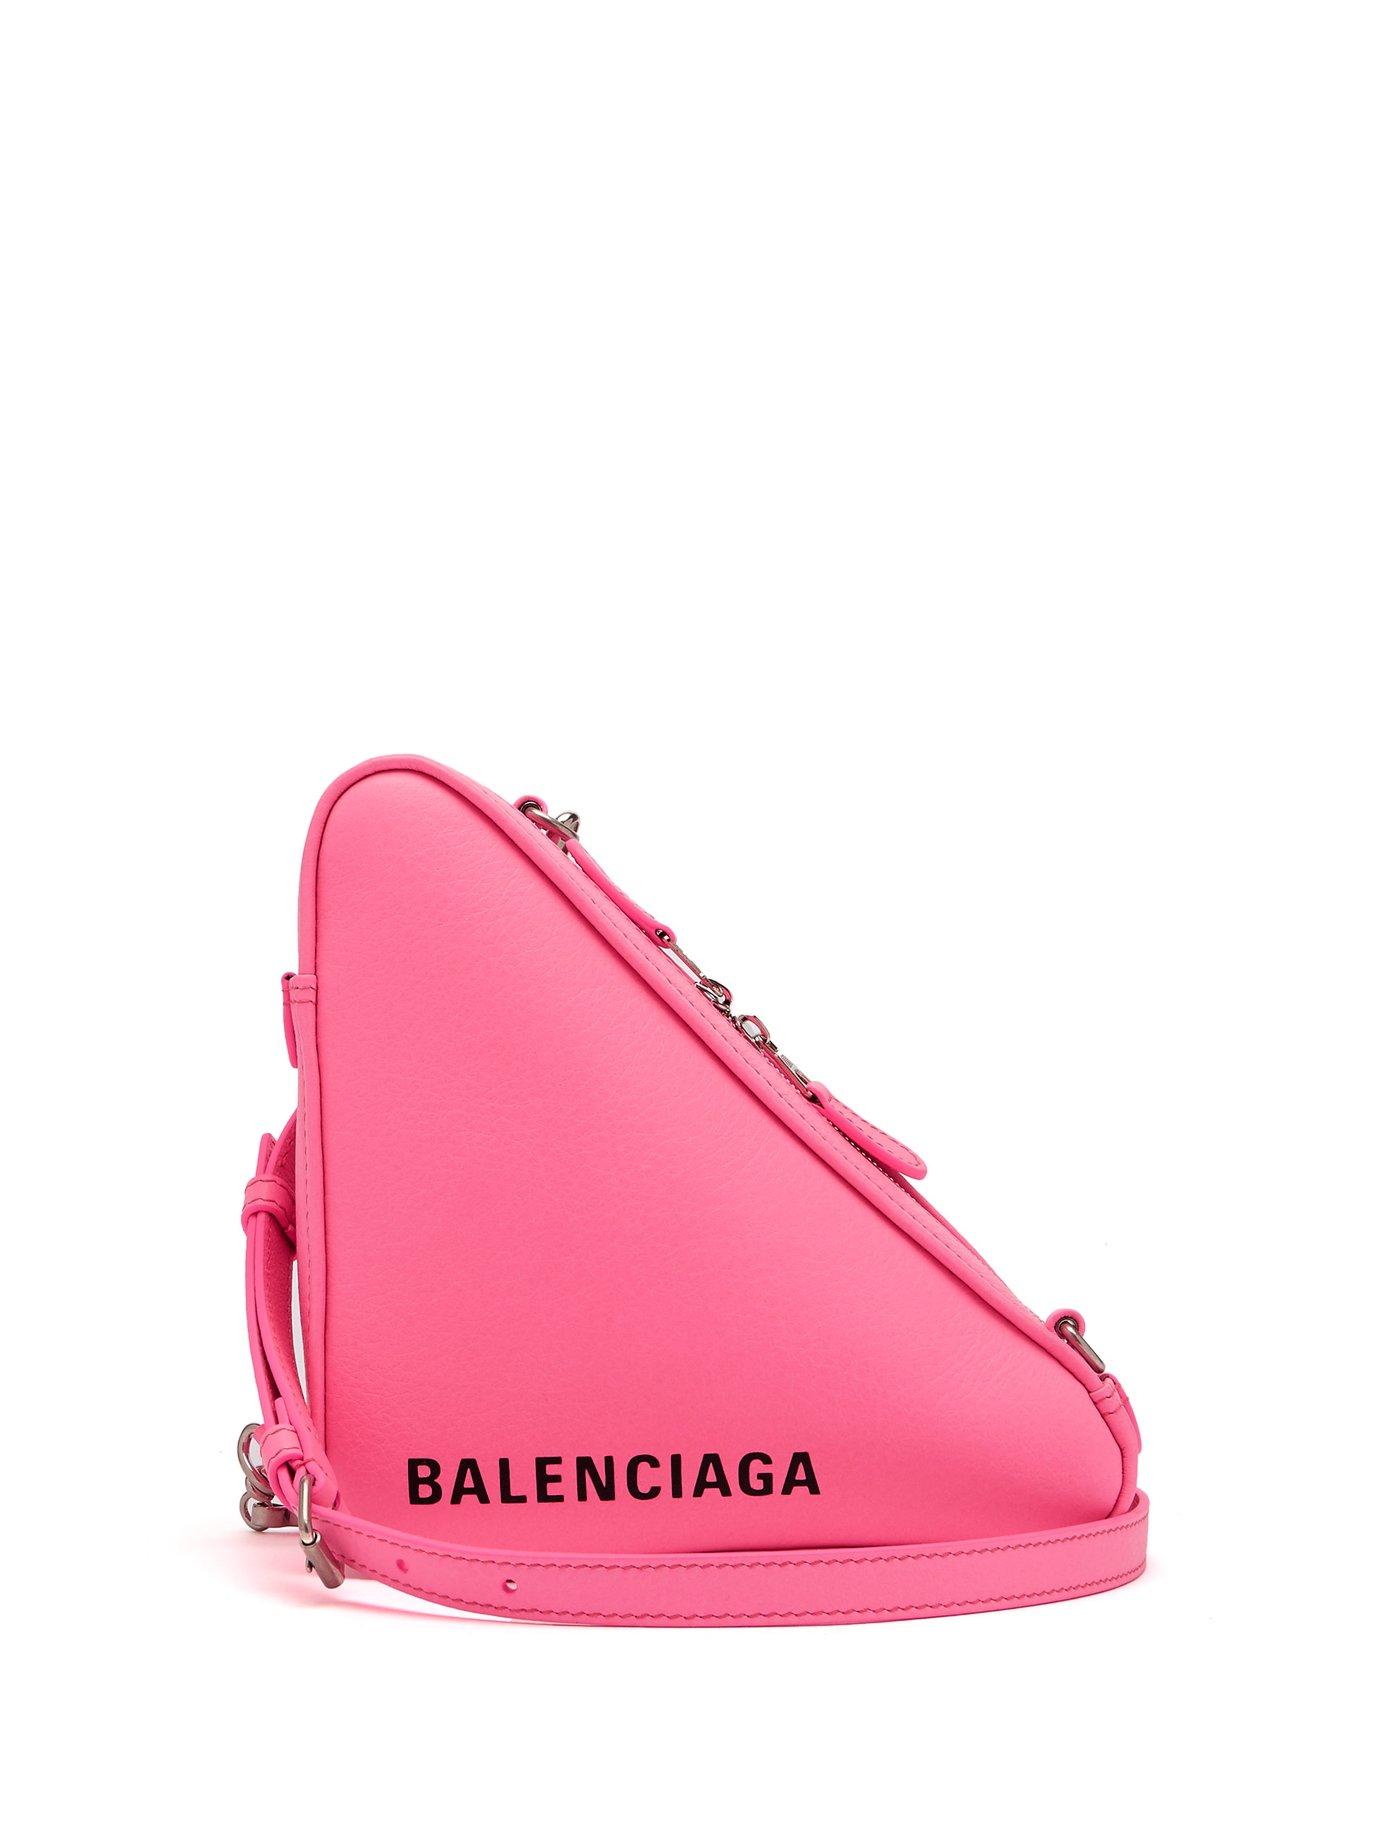 Balenciaga Triangle Pouch Crossbody Bag in Pink | Lyst